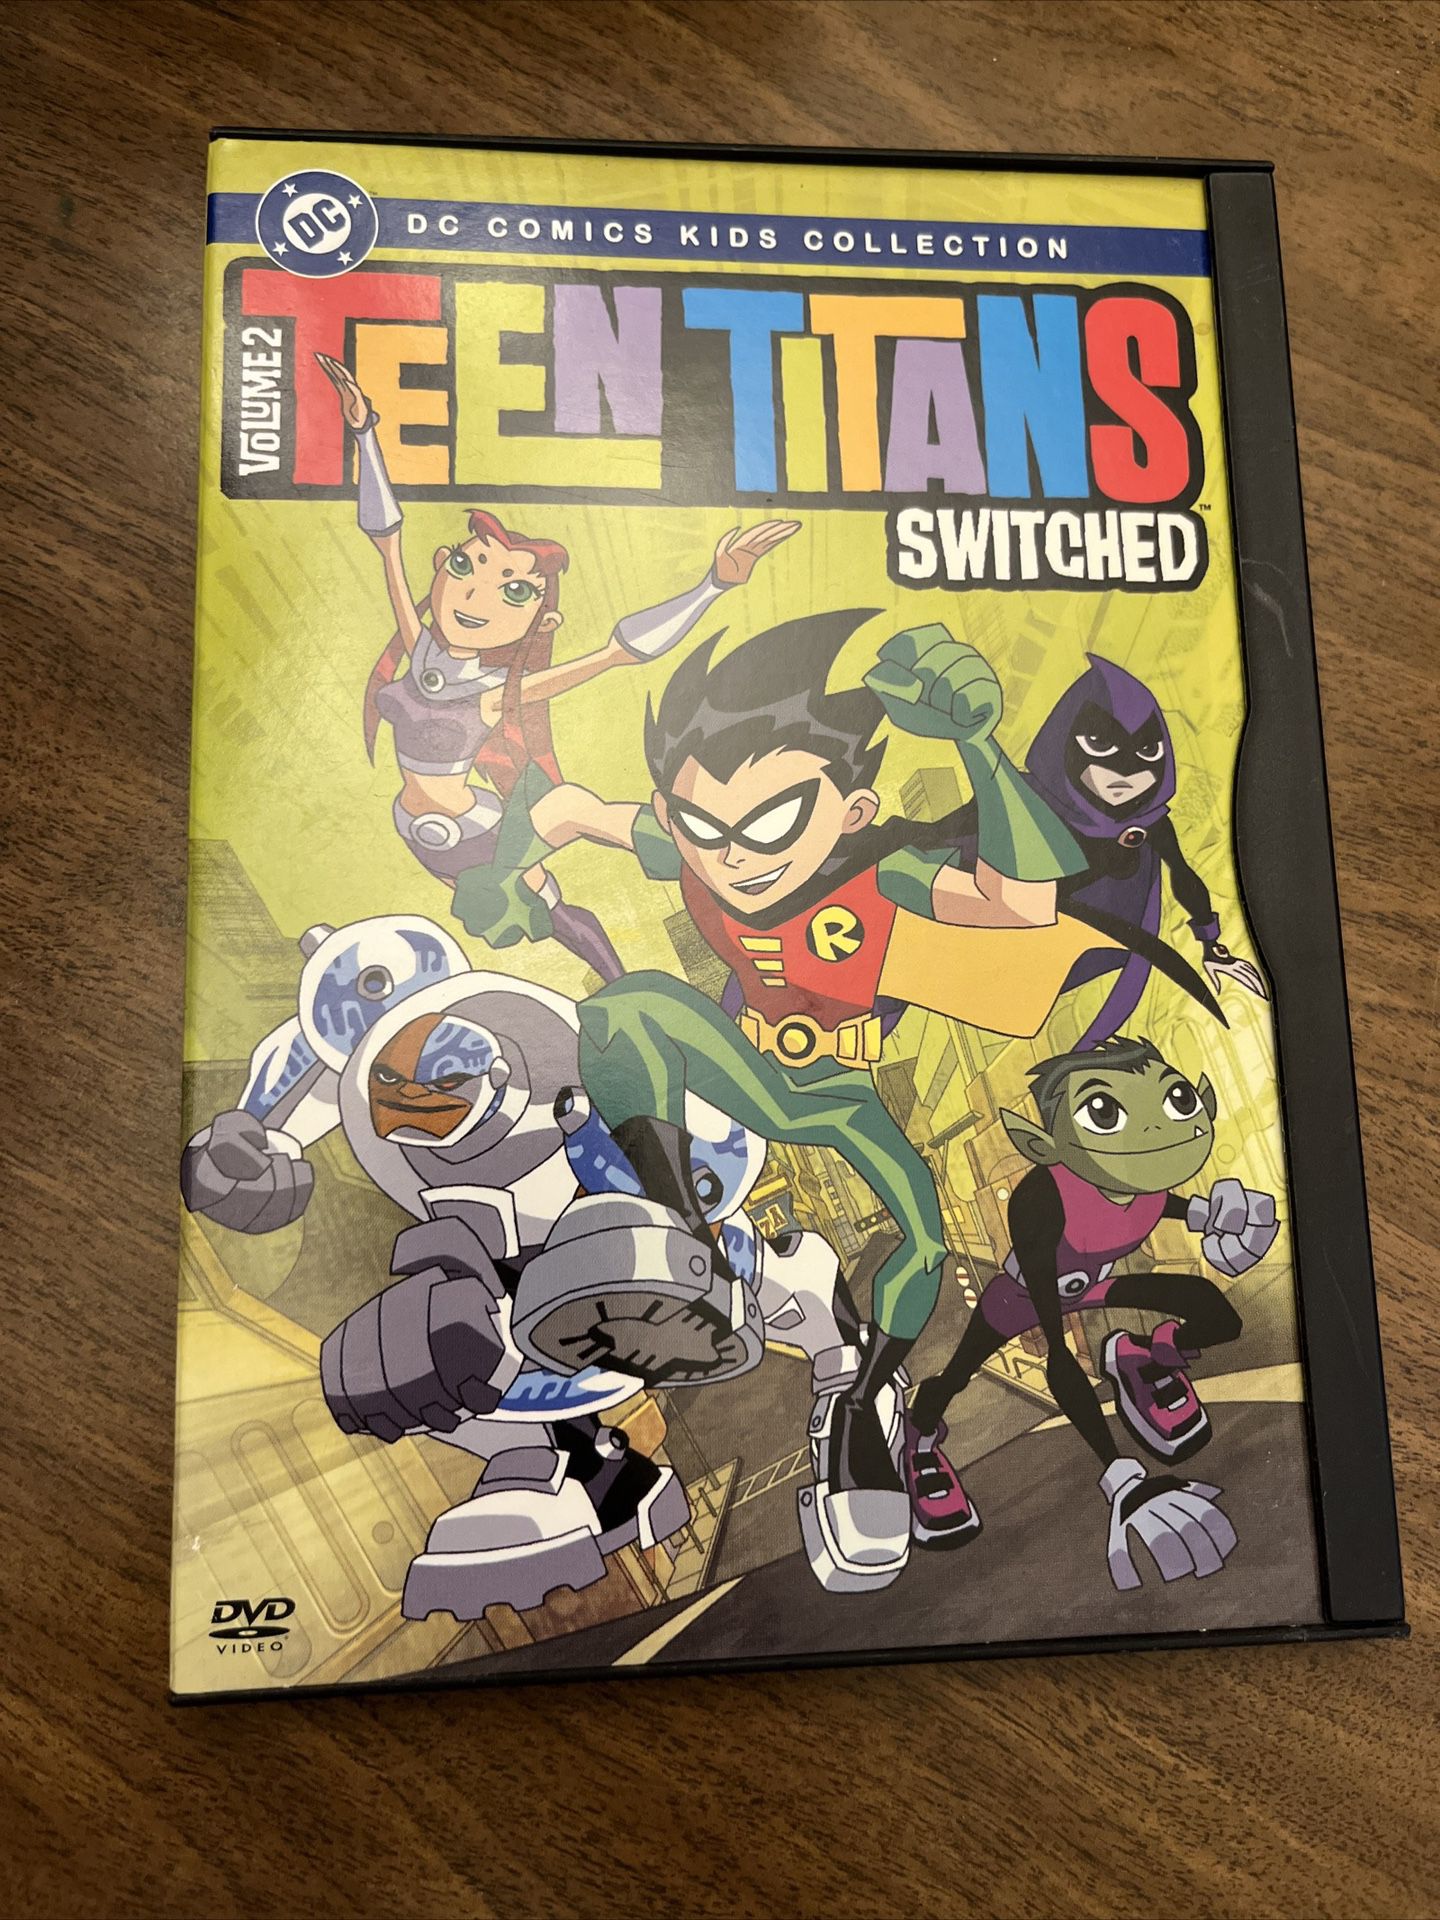 Teen Titans - Season 1: Vol. 2 (DVD, 2005)